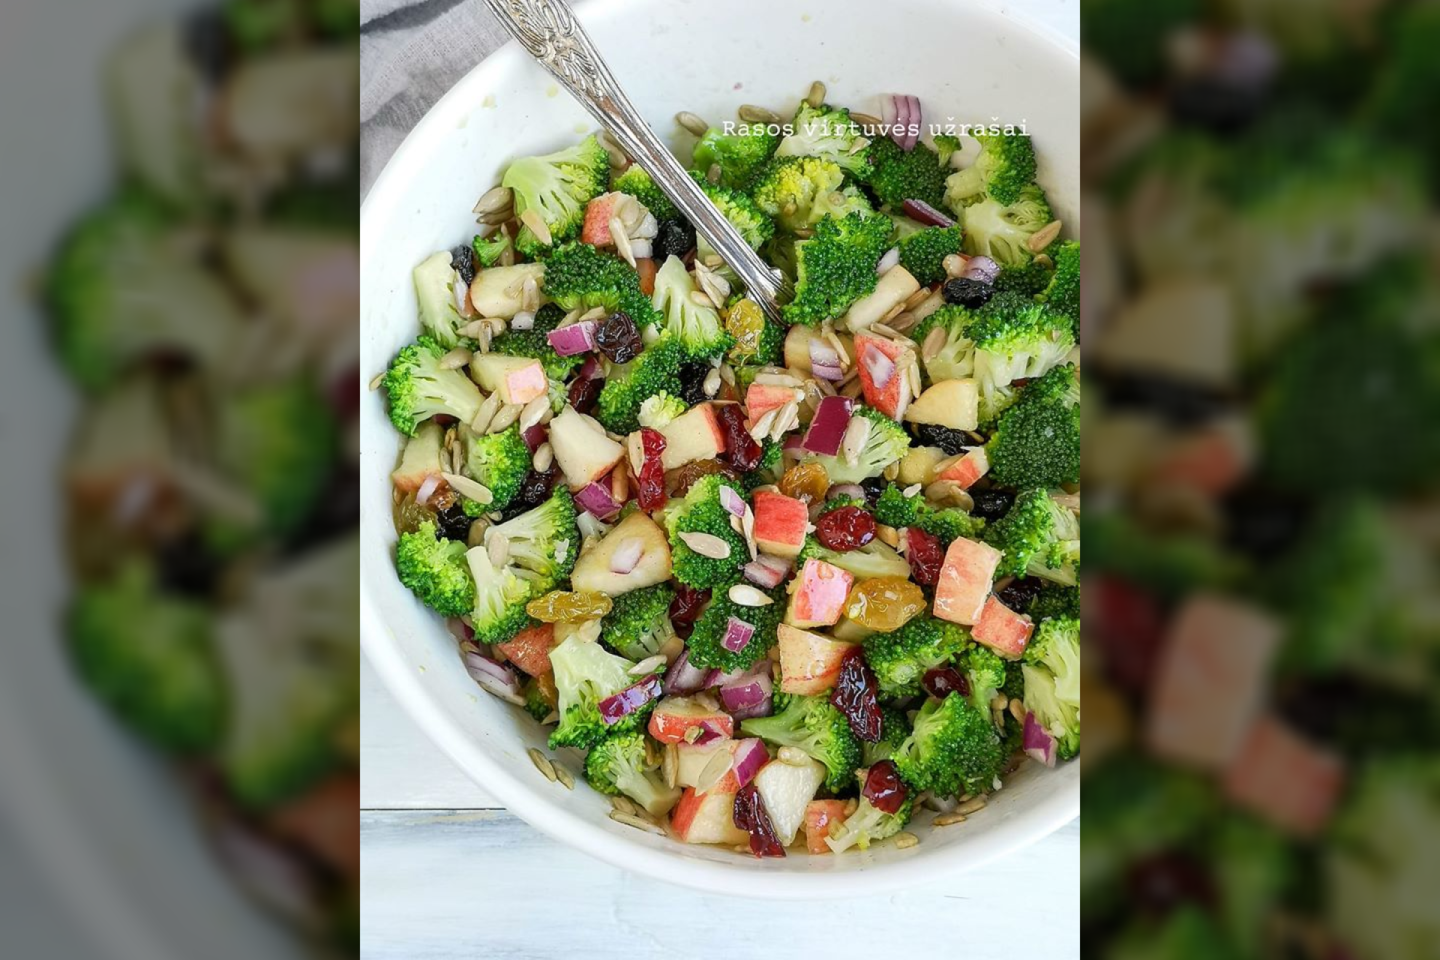 Brokolių salotos su obuoliais.<br>Nuotr. iš „Rasos virtuvės užrašai“.